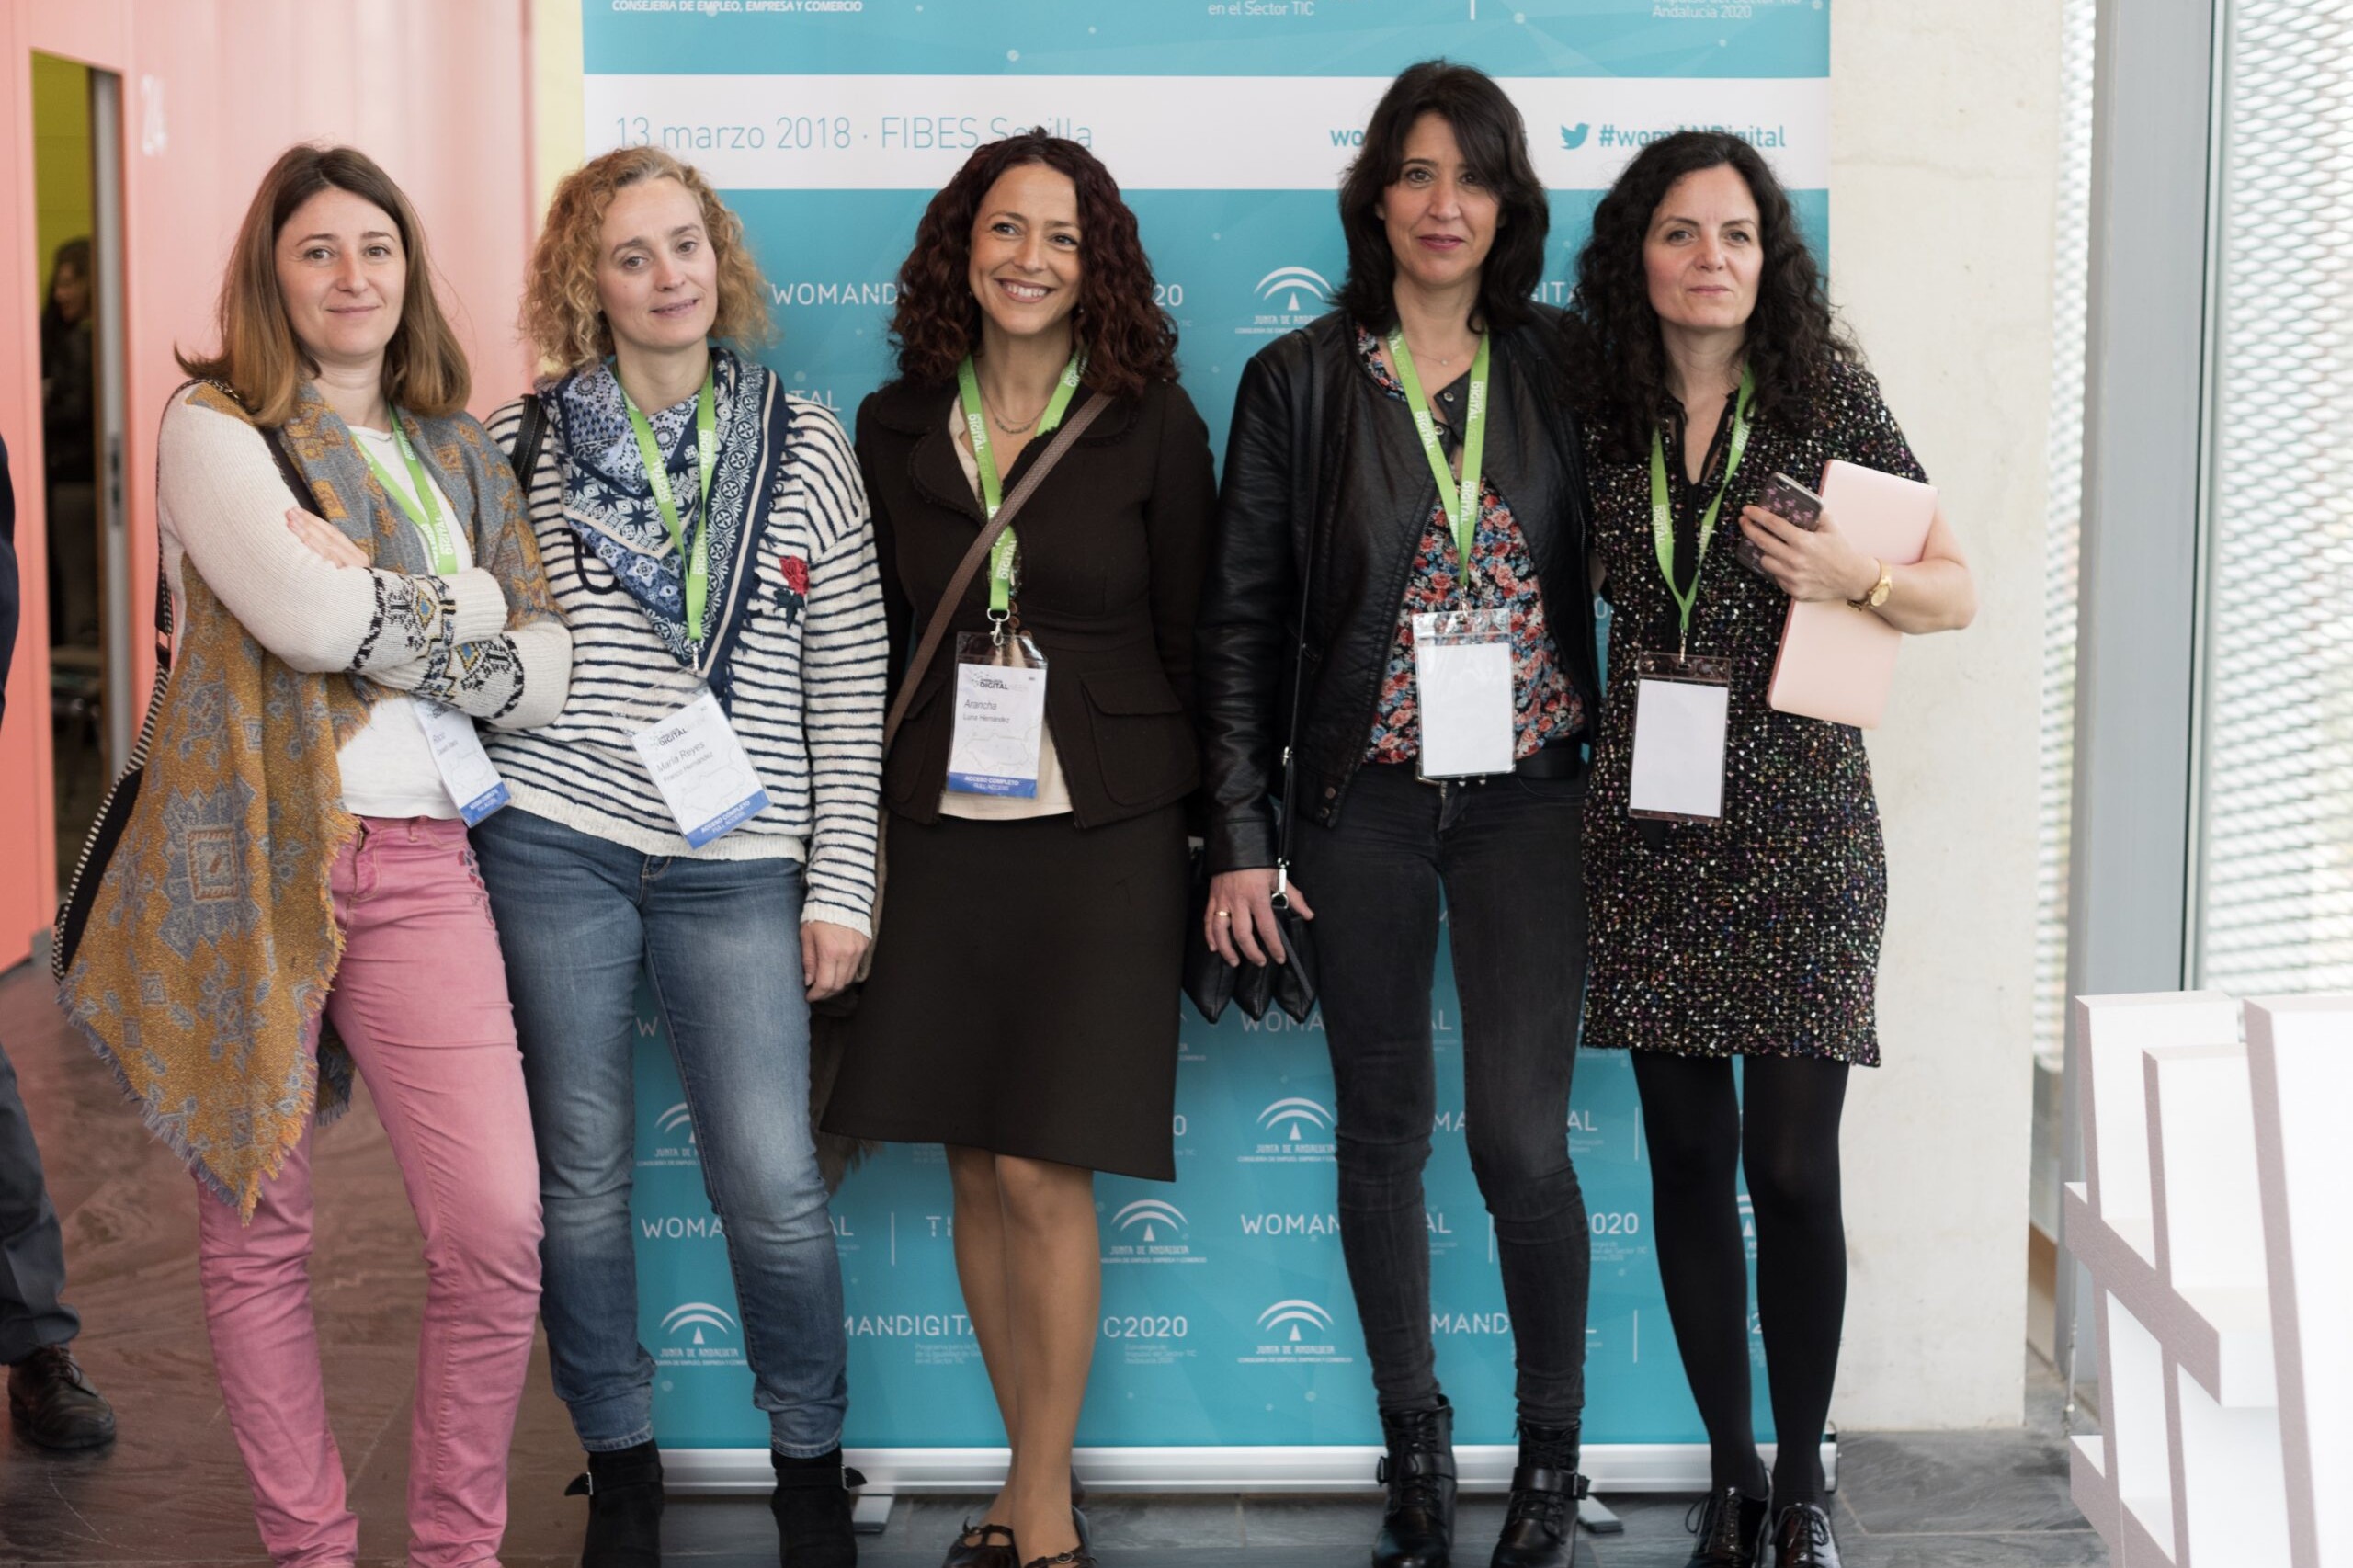 Cinco mujeres frente el photocall de la Jornada Womandigital Sevilla 2018